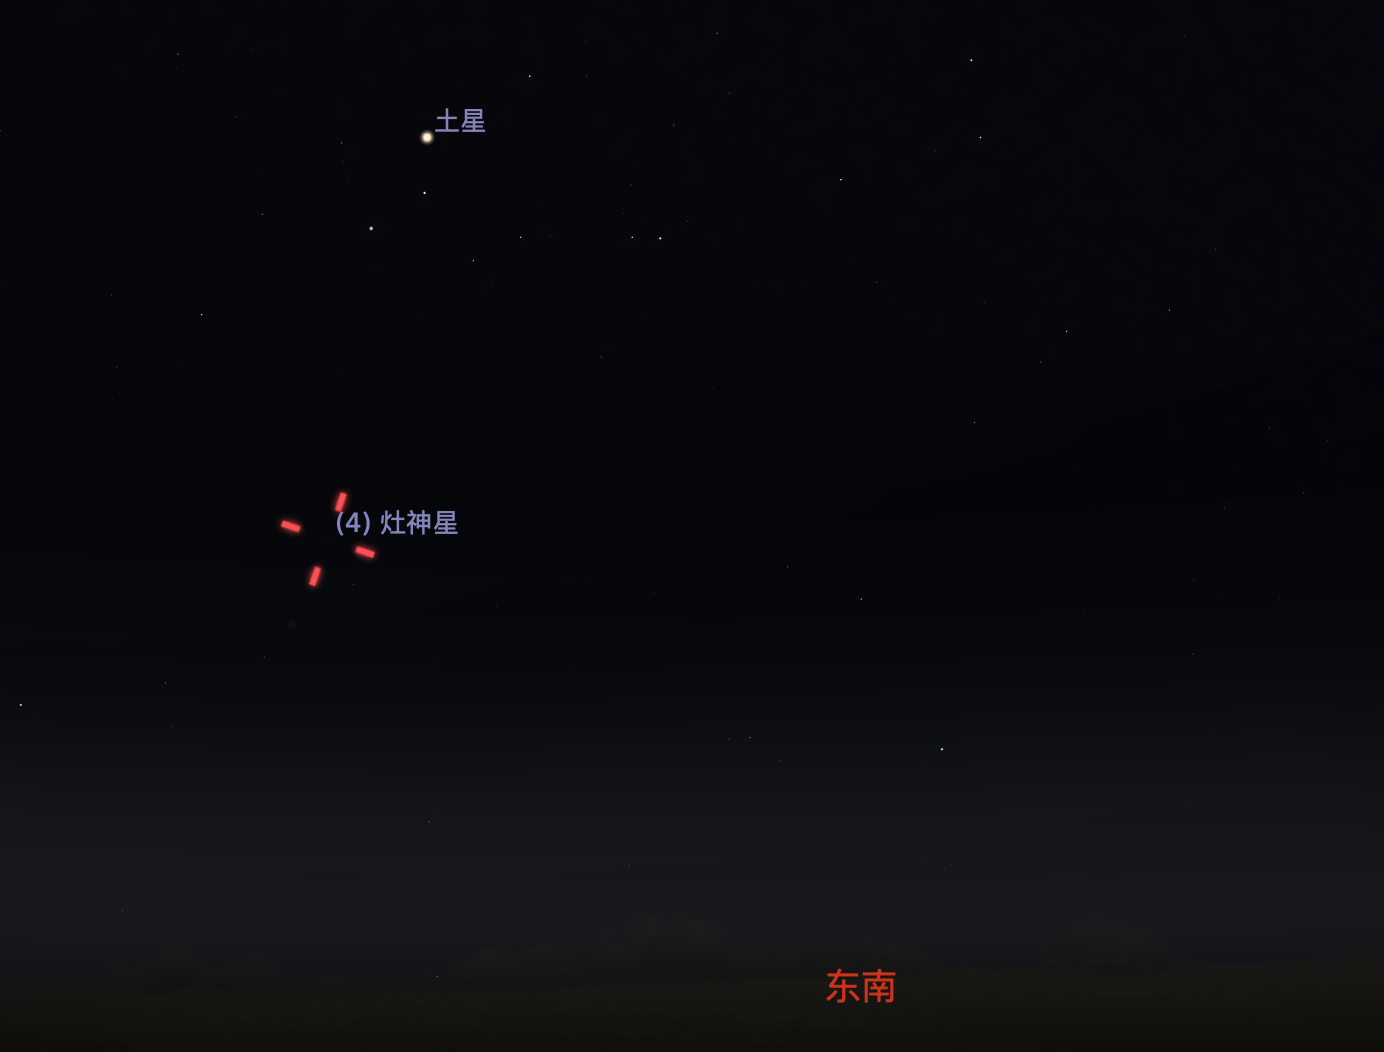 模拟入夜后灶神星从东南方升起，上方明亮的行星为土星，你可以借助它找到灶神星。